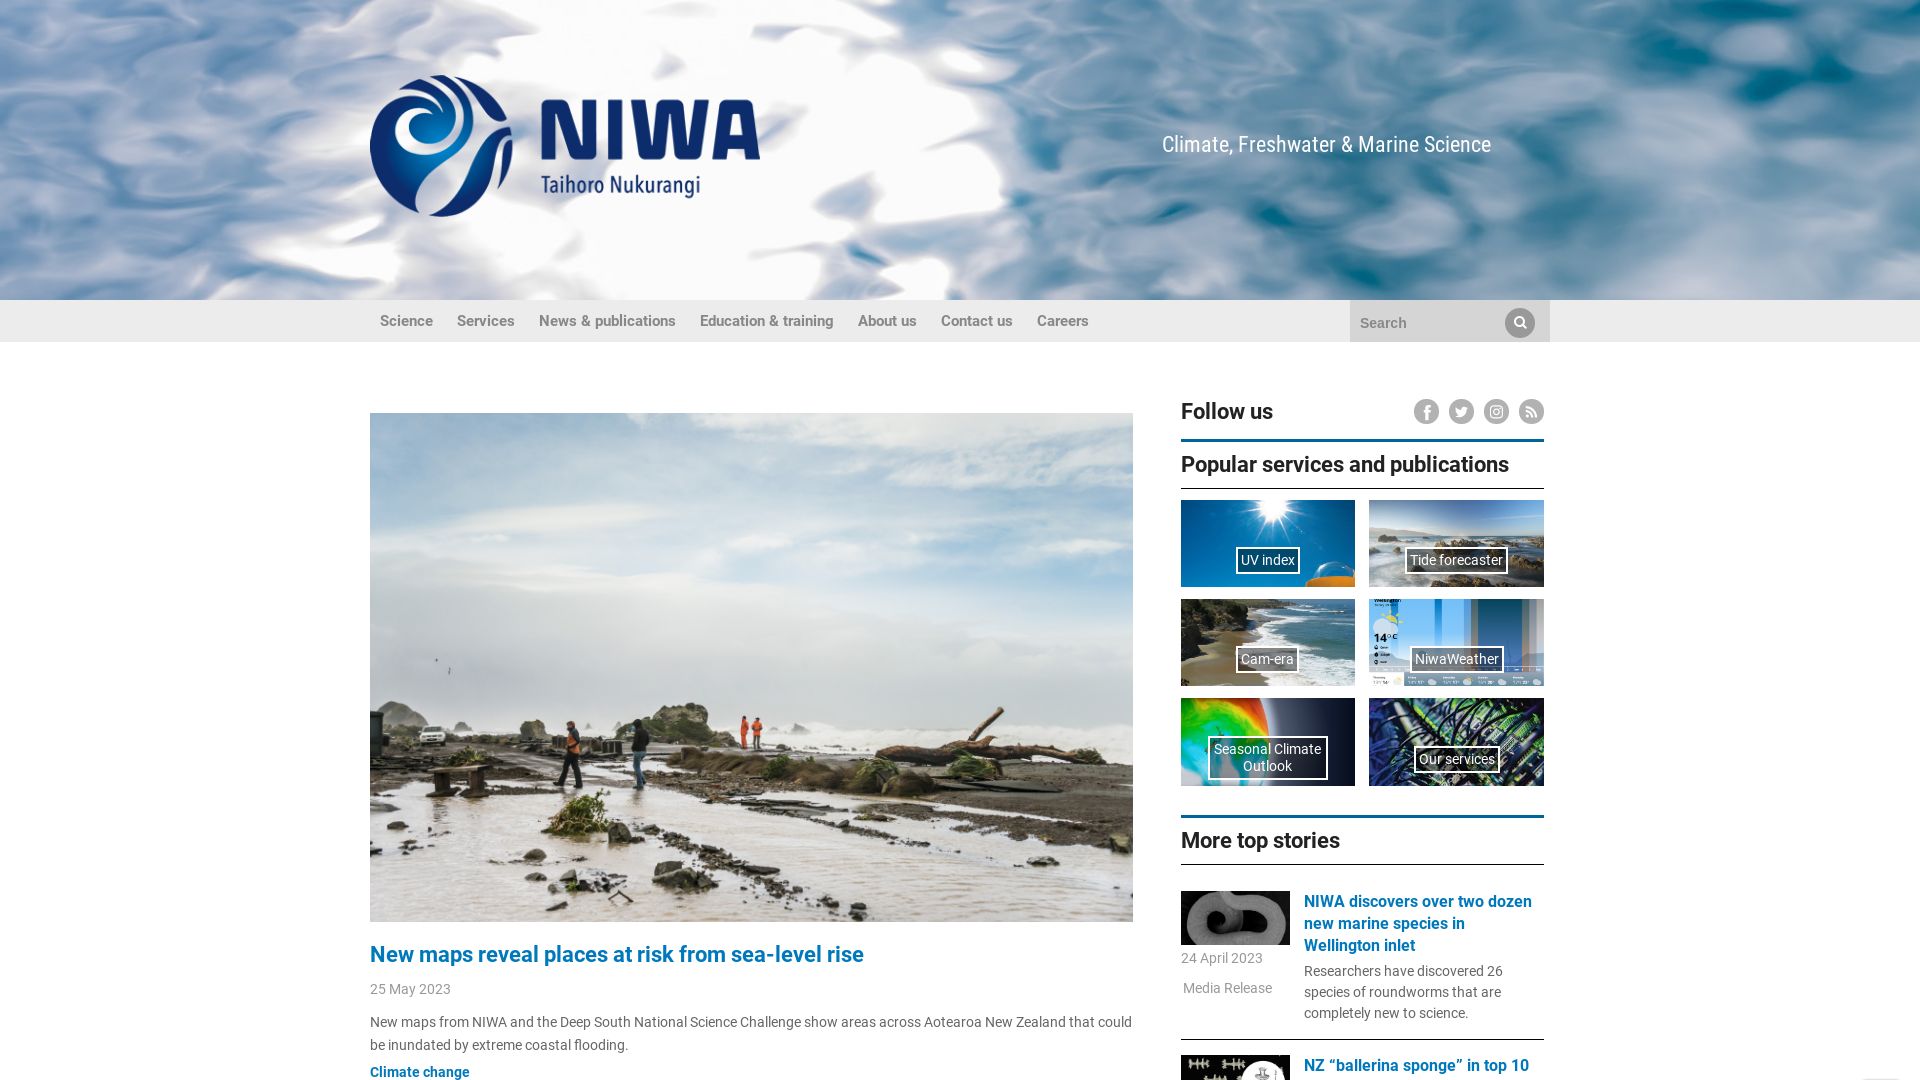 网站状态 niwa.co.nz 是  在线的